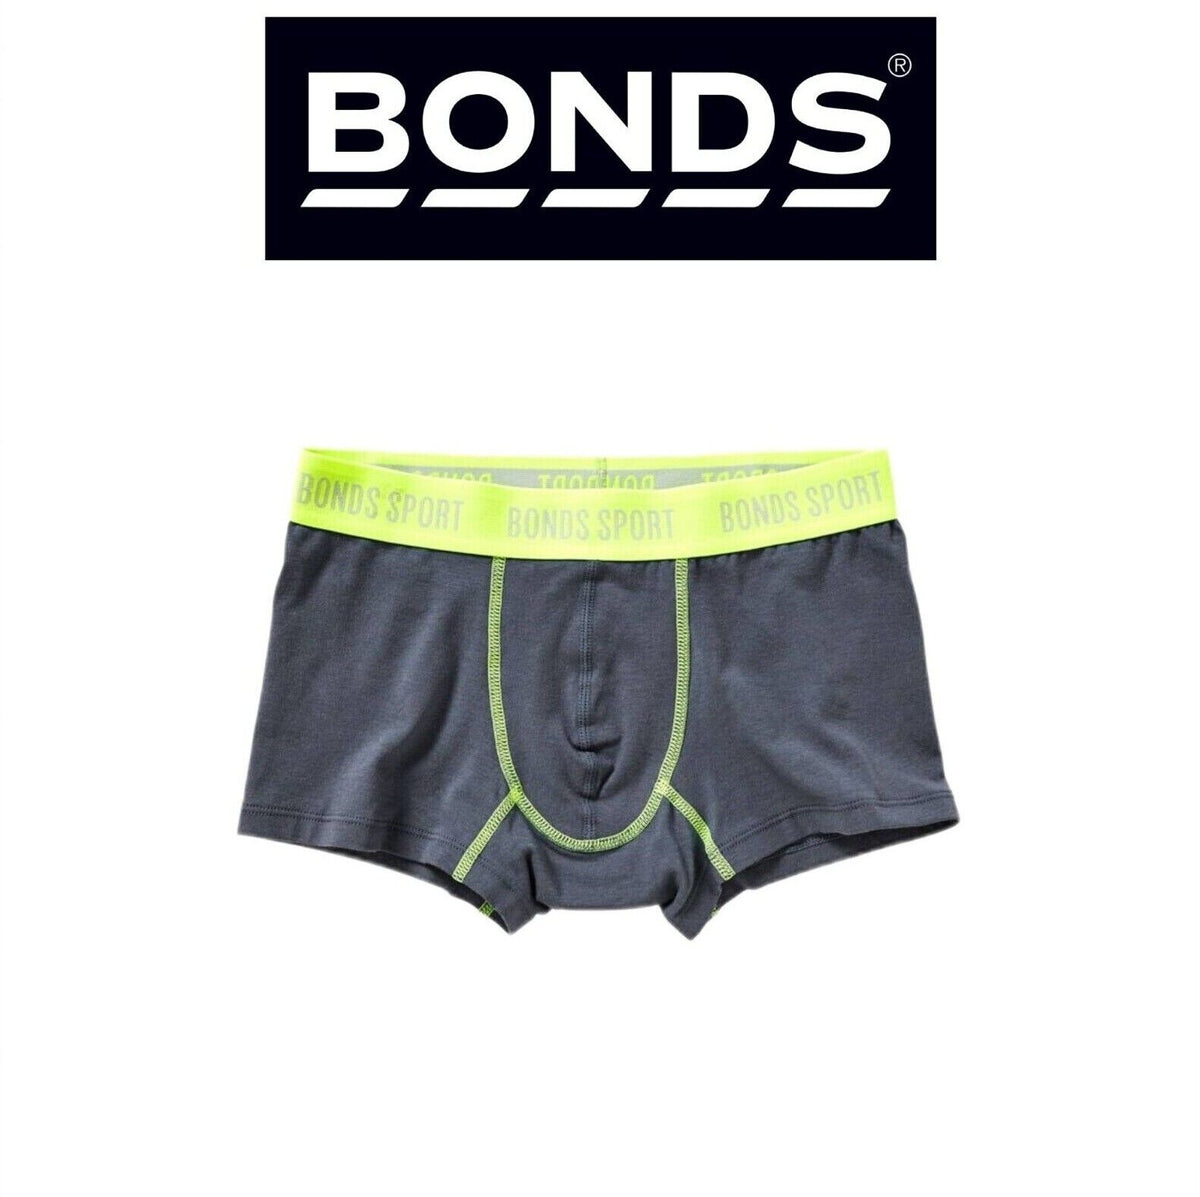 Bonds Boys Sport Cool Wear Undies Underwear Brief Boxer Shorts UY3G1A